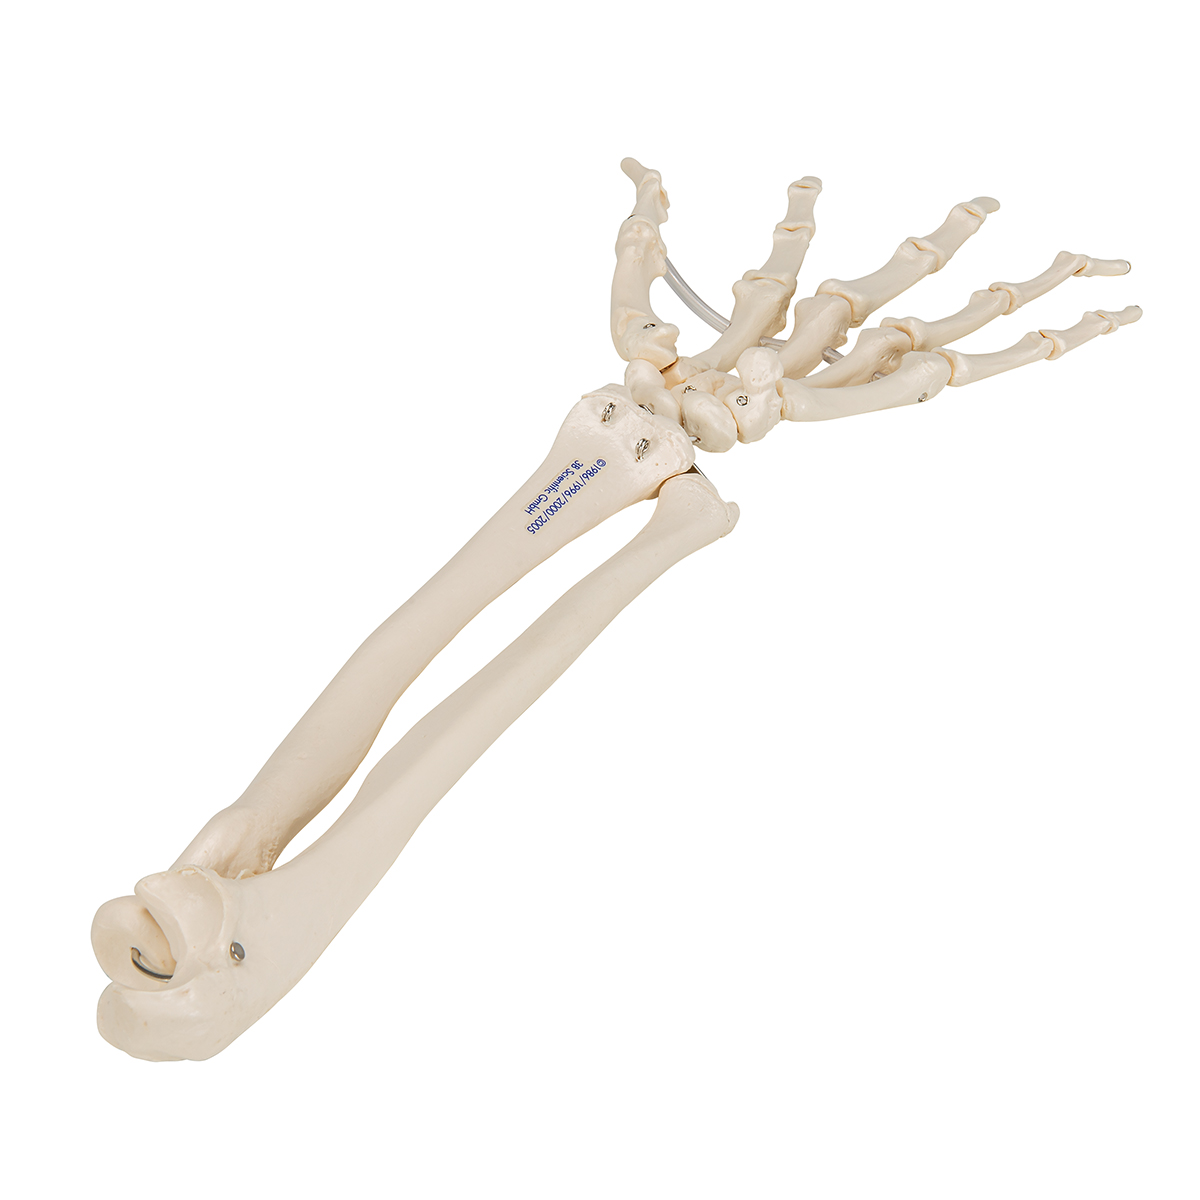 Vue dorsale du squelette de la main droite (Archives Larousse). La